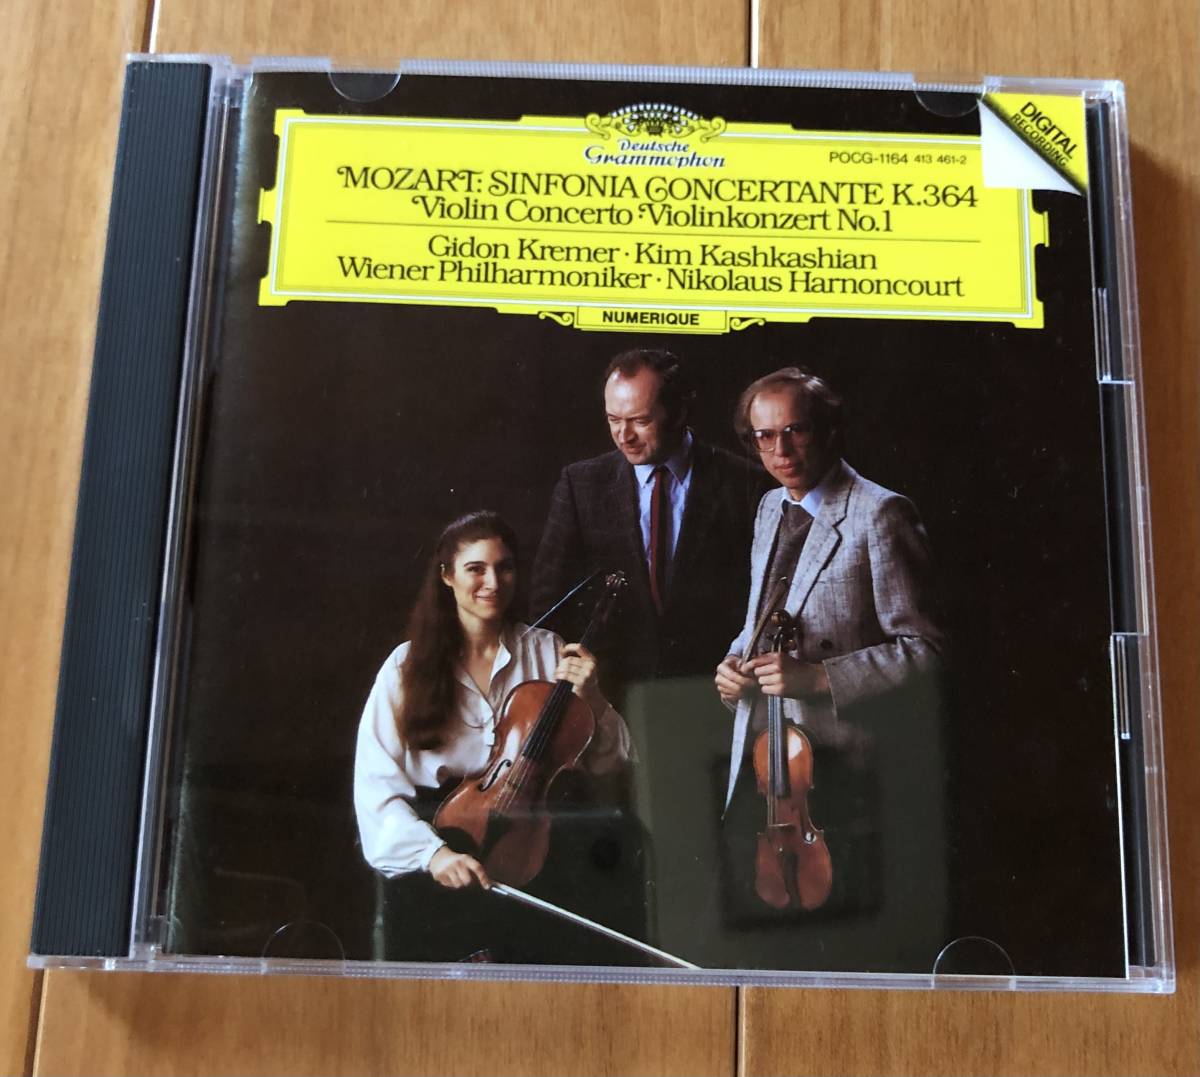 CD-Sep / 日 DG / クレーメル(vn)、カシュカシャン(viola)、アーノンクール・ウィーンフィル / モーツァルト_協奏交響曲 K.364 他 _画像1